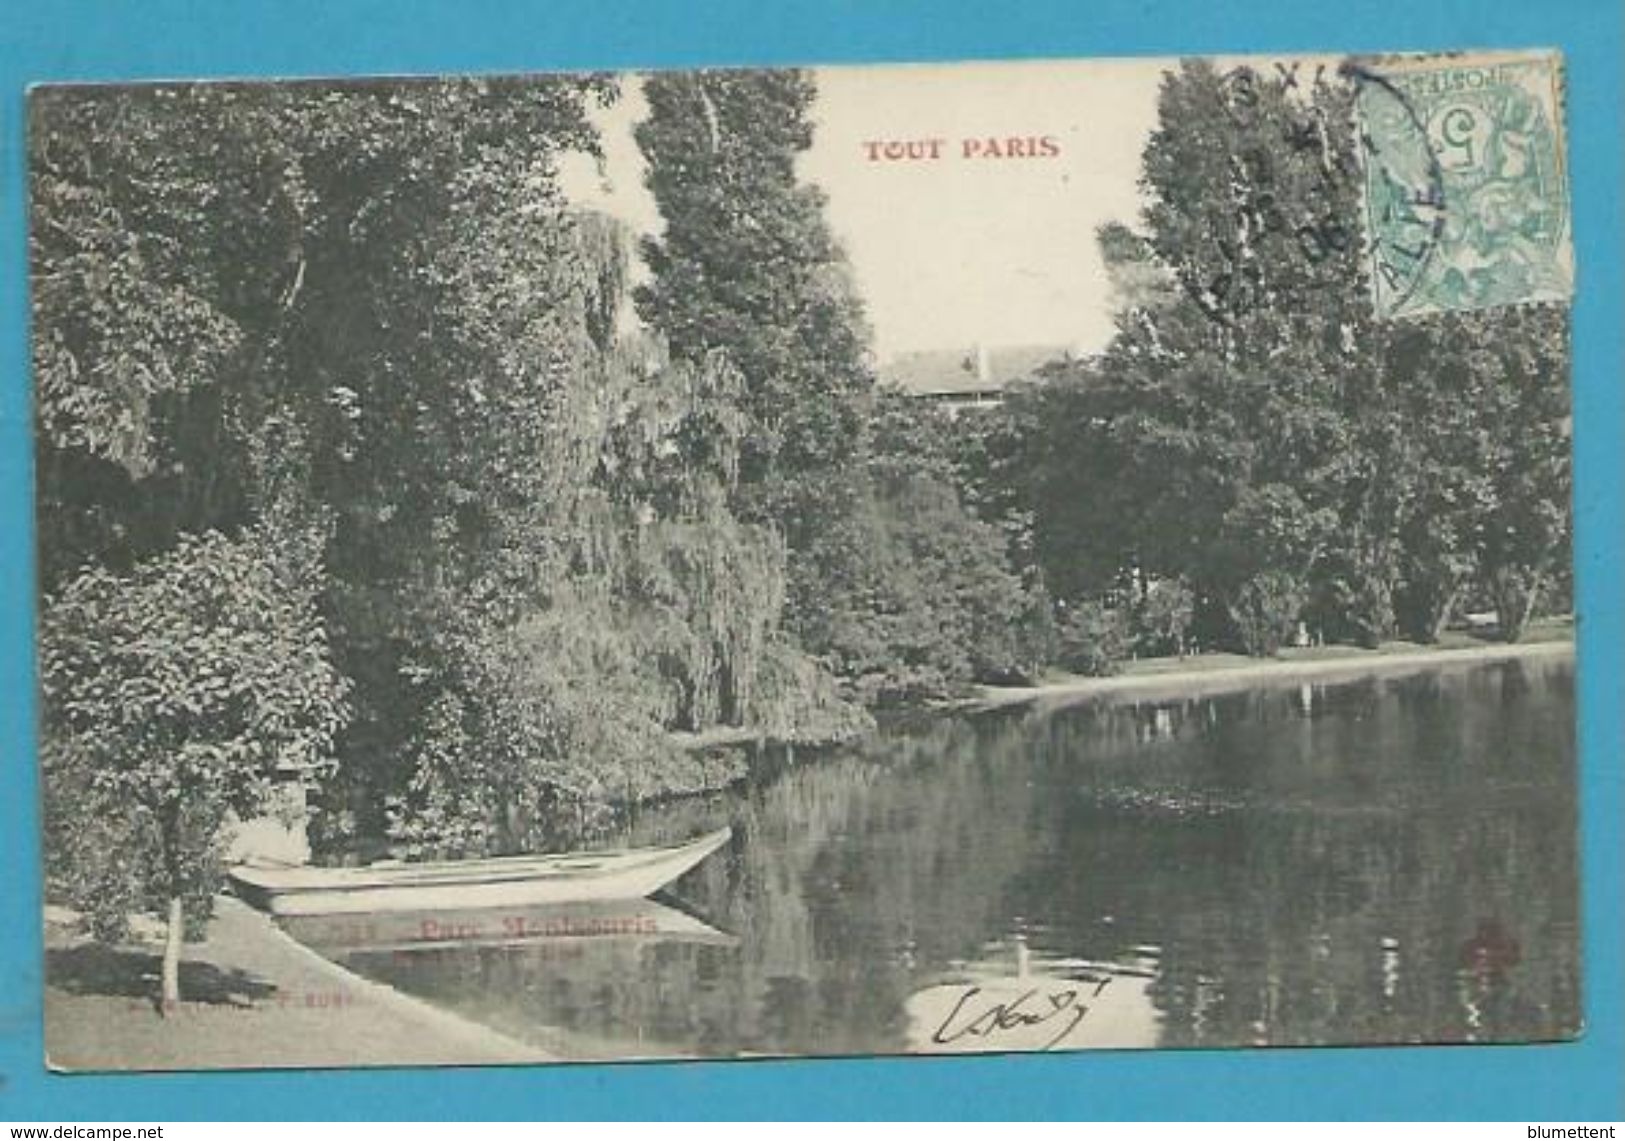 CPA TOUT PARIS 534 - Buttes Chaumont  Parc Montsouris (XIXème Arrt.) Ed. FLEURY - Paris (19)